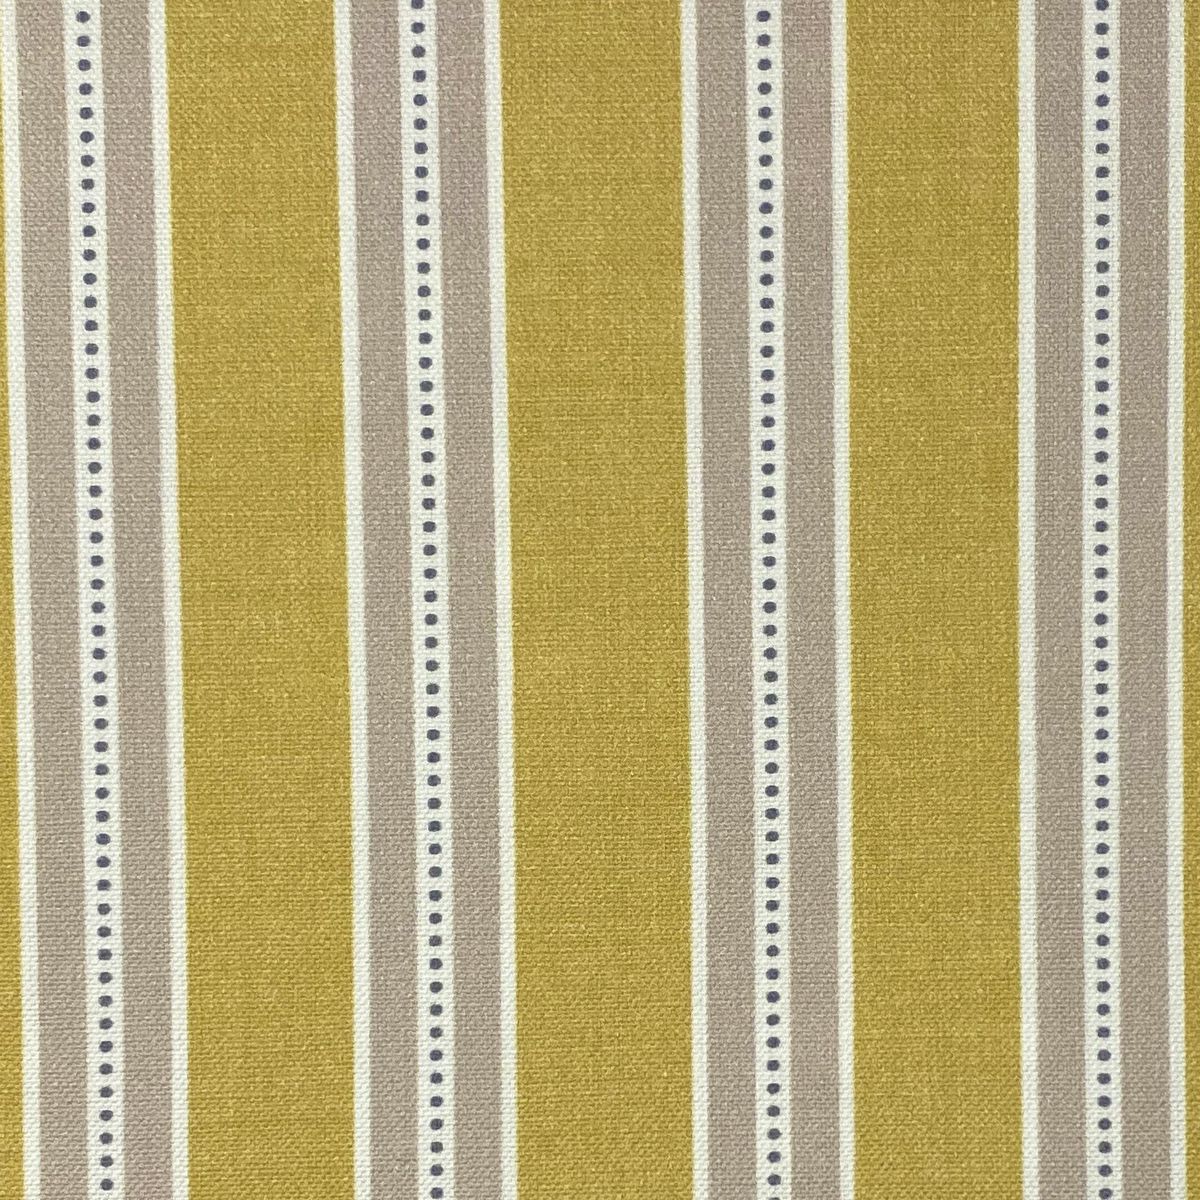 Drayton Ochre Fabric by Chatham Glyn